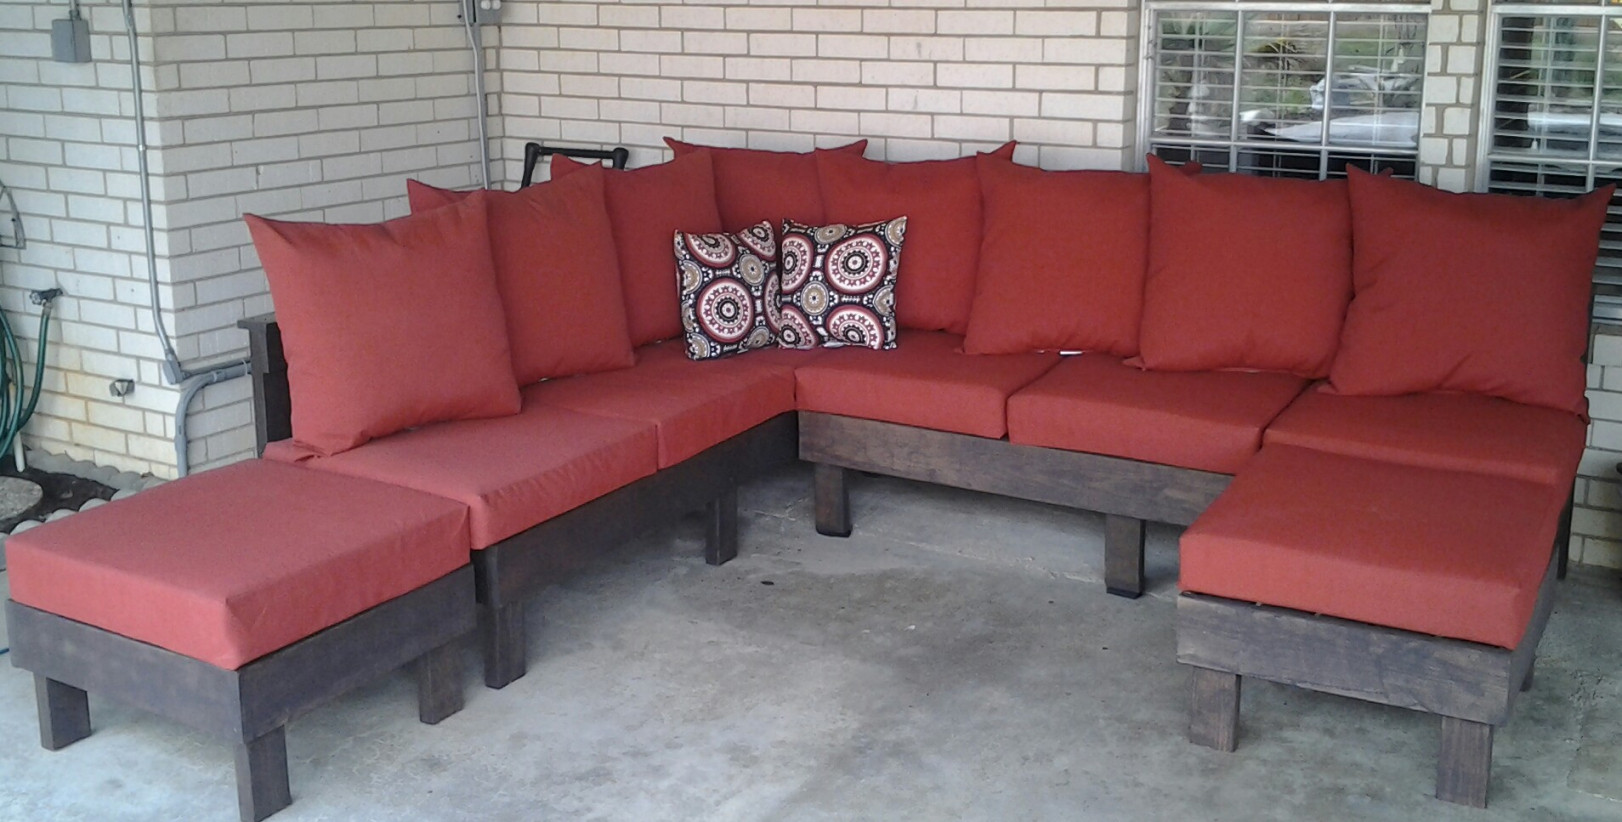 DIY Outdoor Sectional Sofa
 Furniture Inspiring Patio Furniture Design Ideas With Diy